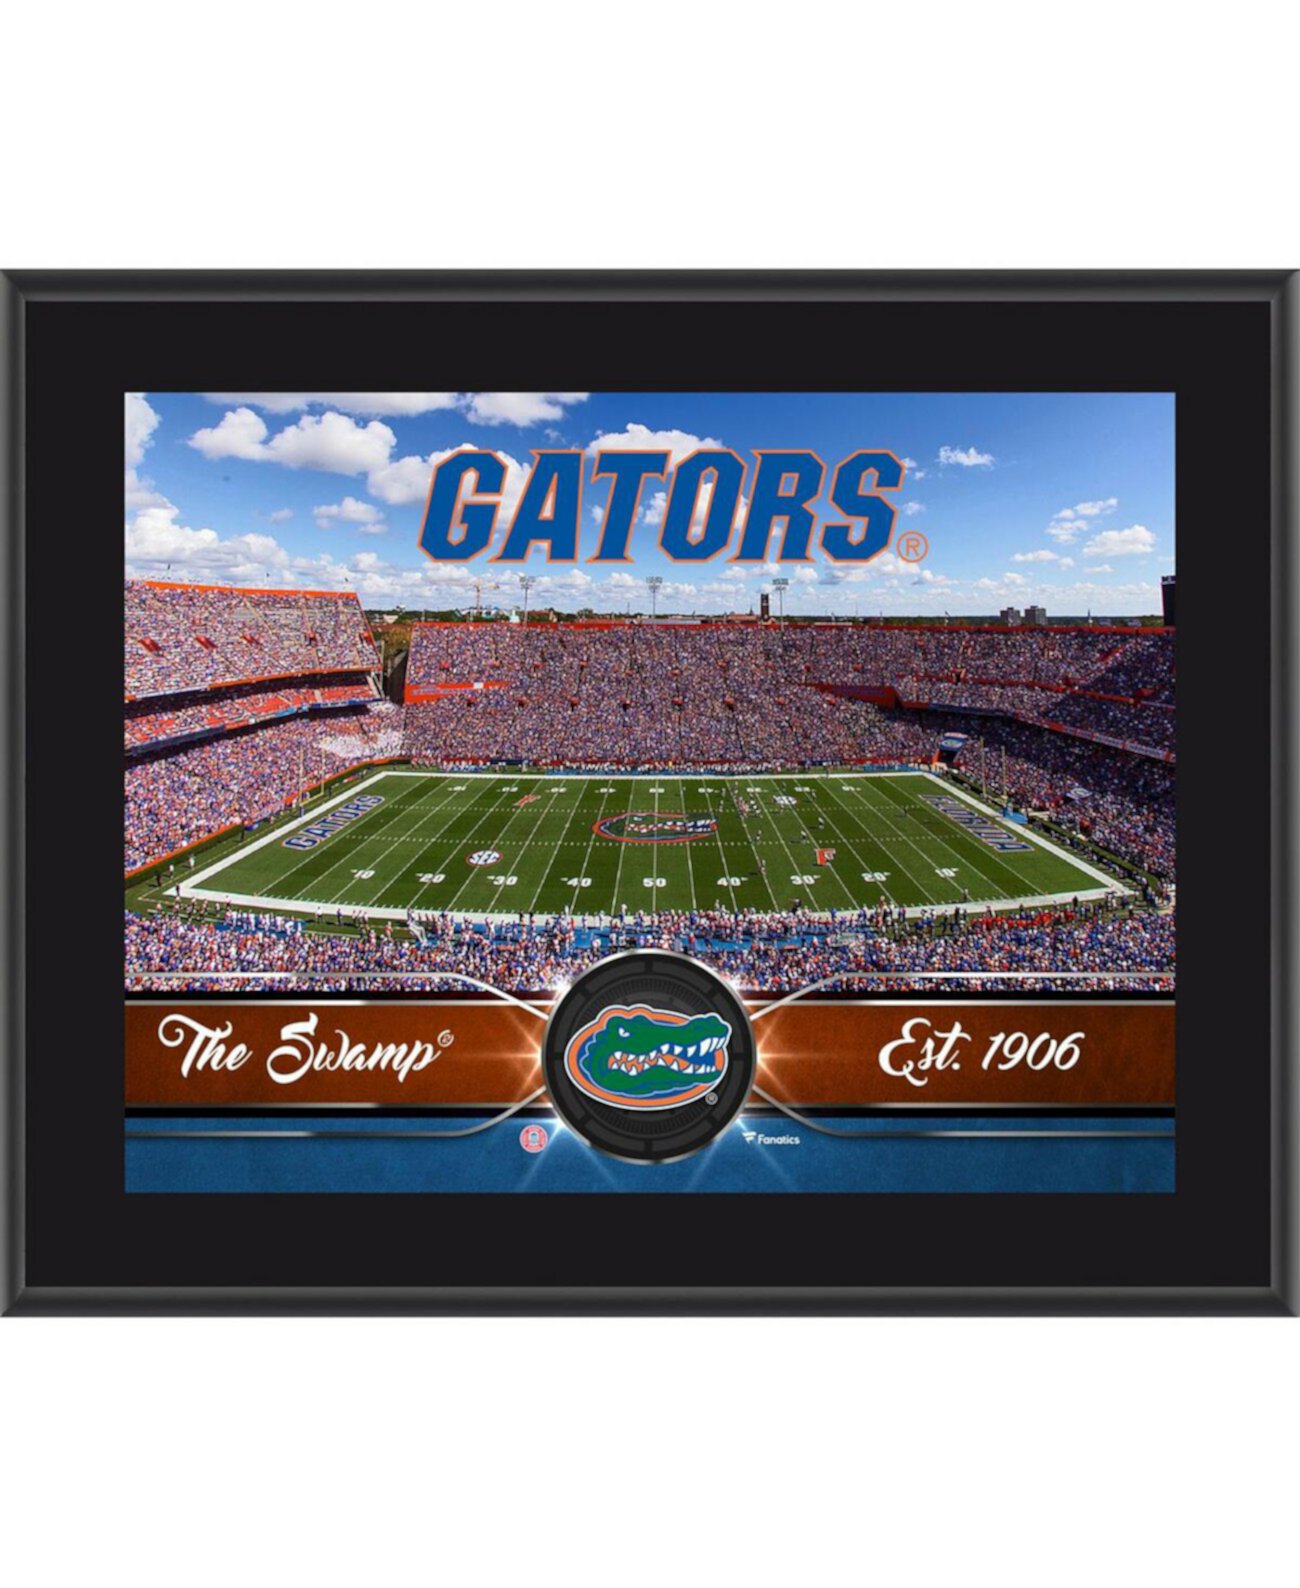 Сублимированная табличка команды Florida Gators размером 10,5 x 13 дюймов Fanatics Authentic